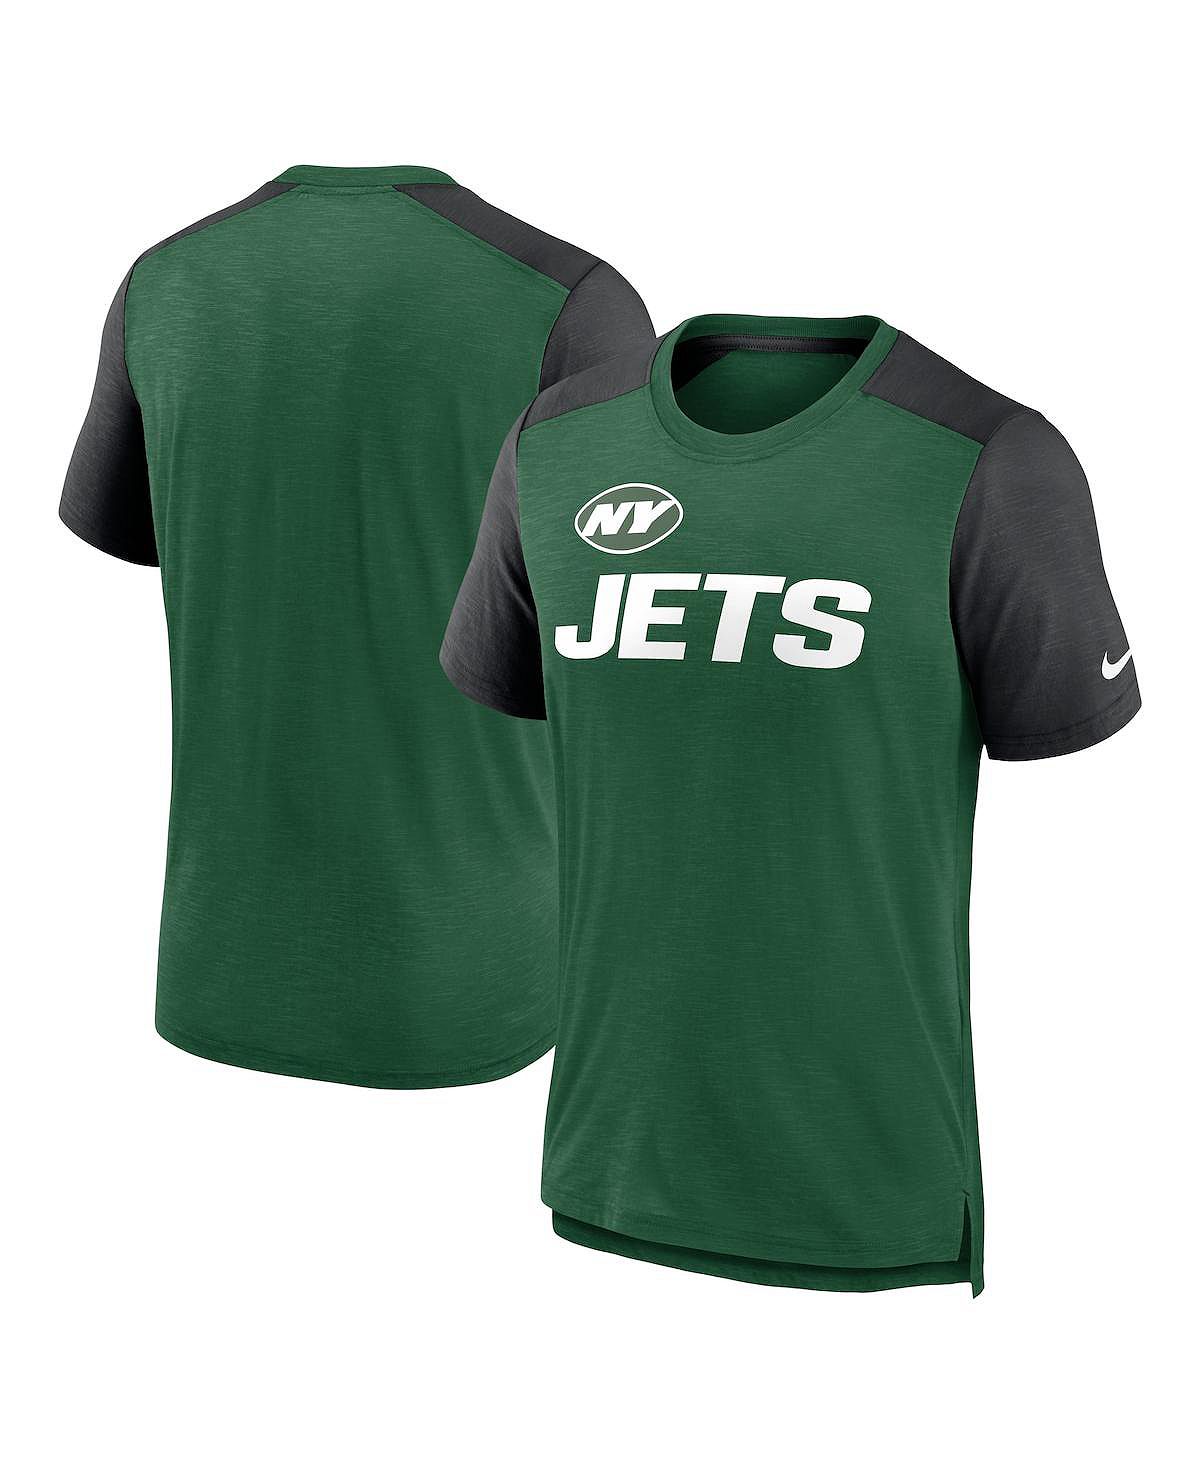 Мужская меланжевая зеленая, меланжево-черная футболка new york jets color block team name Nike, мульти рюкзак new york jets premium на колесиках